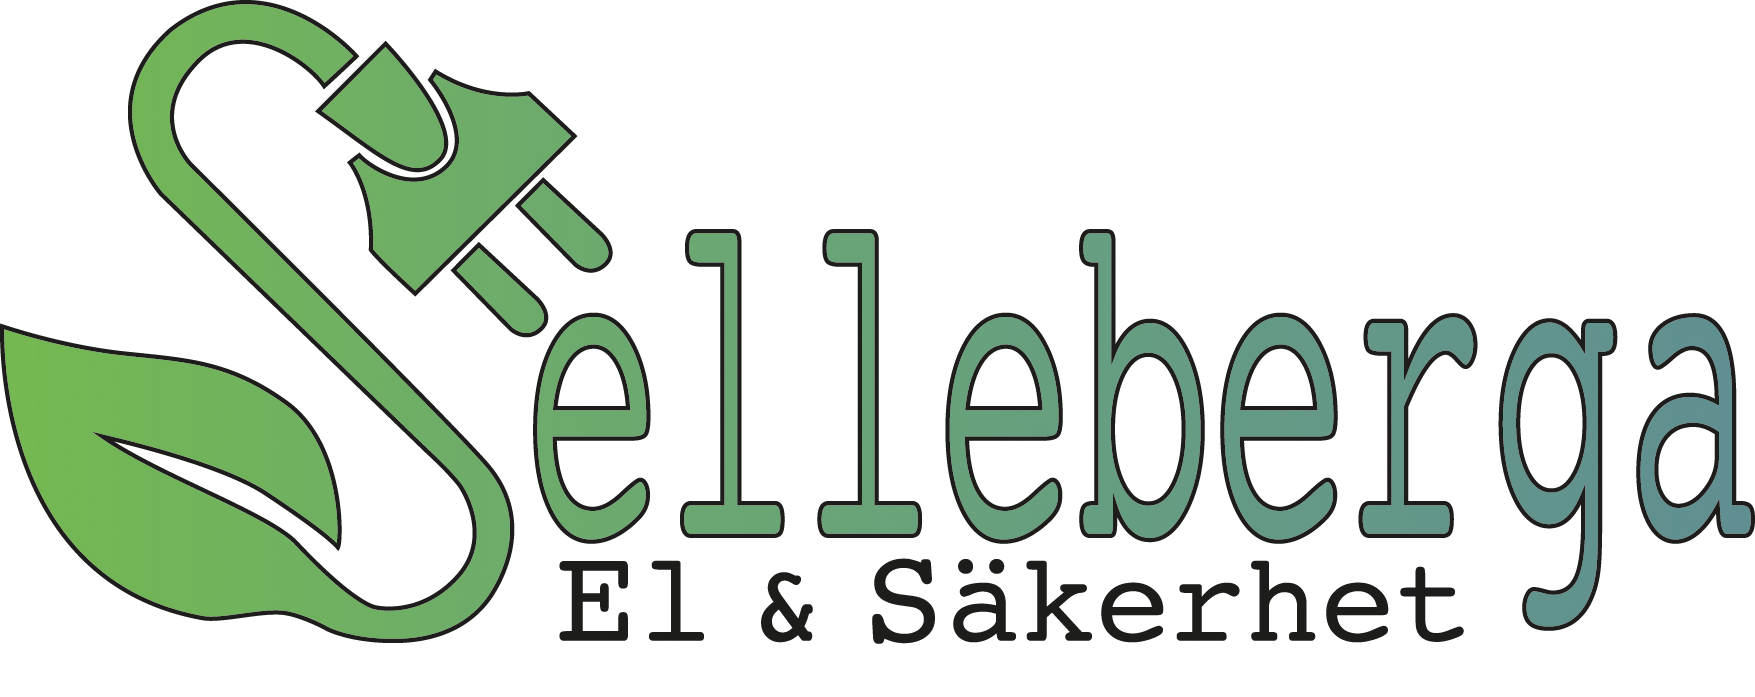 Välkommen till Selleberga EL & Säkerhet